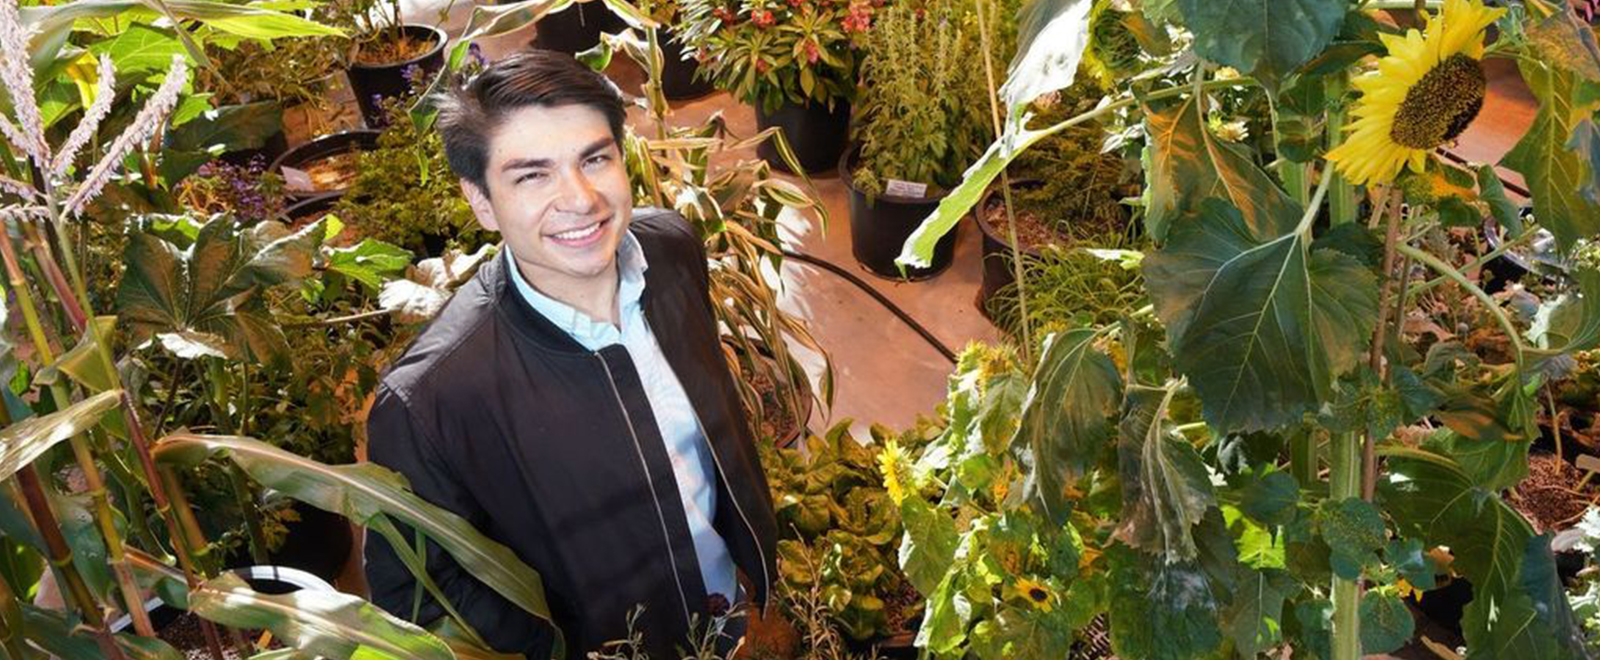 Enrique Velasco surrounded by plants